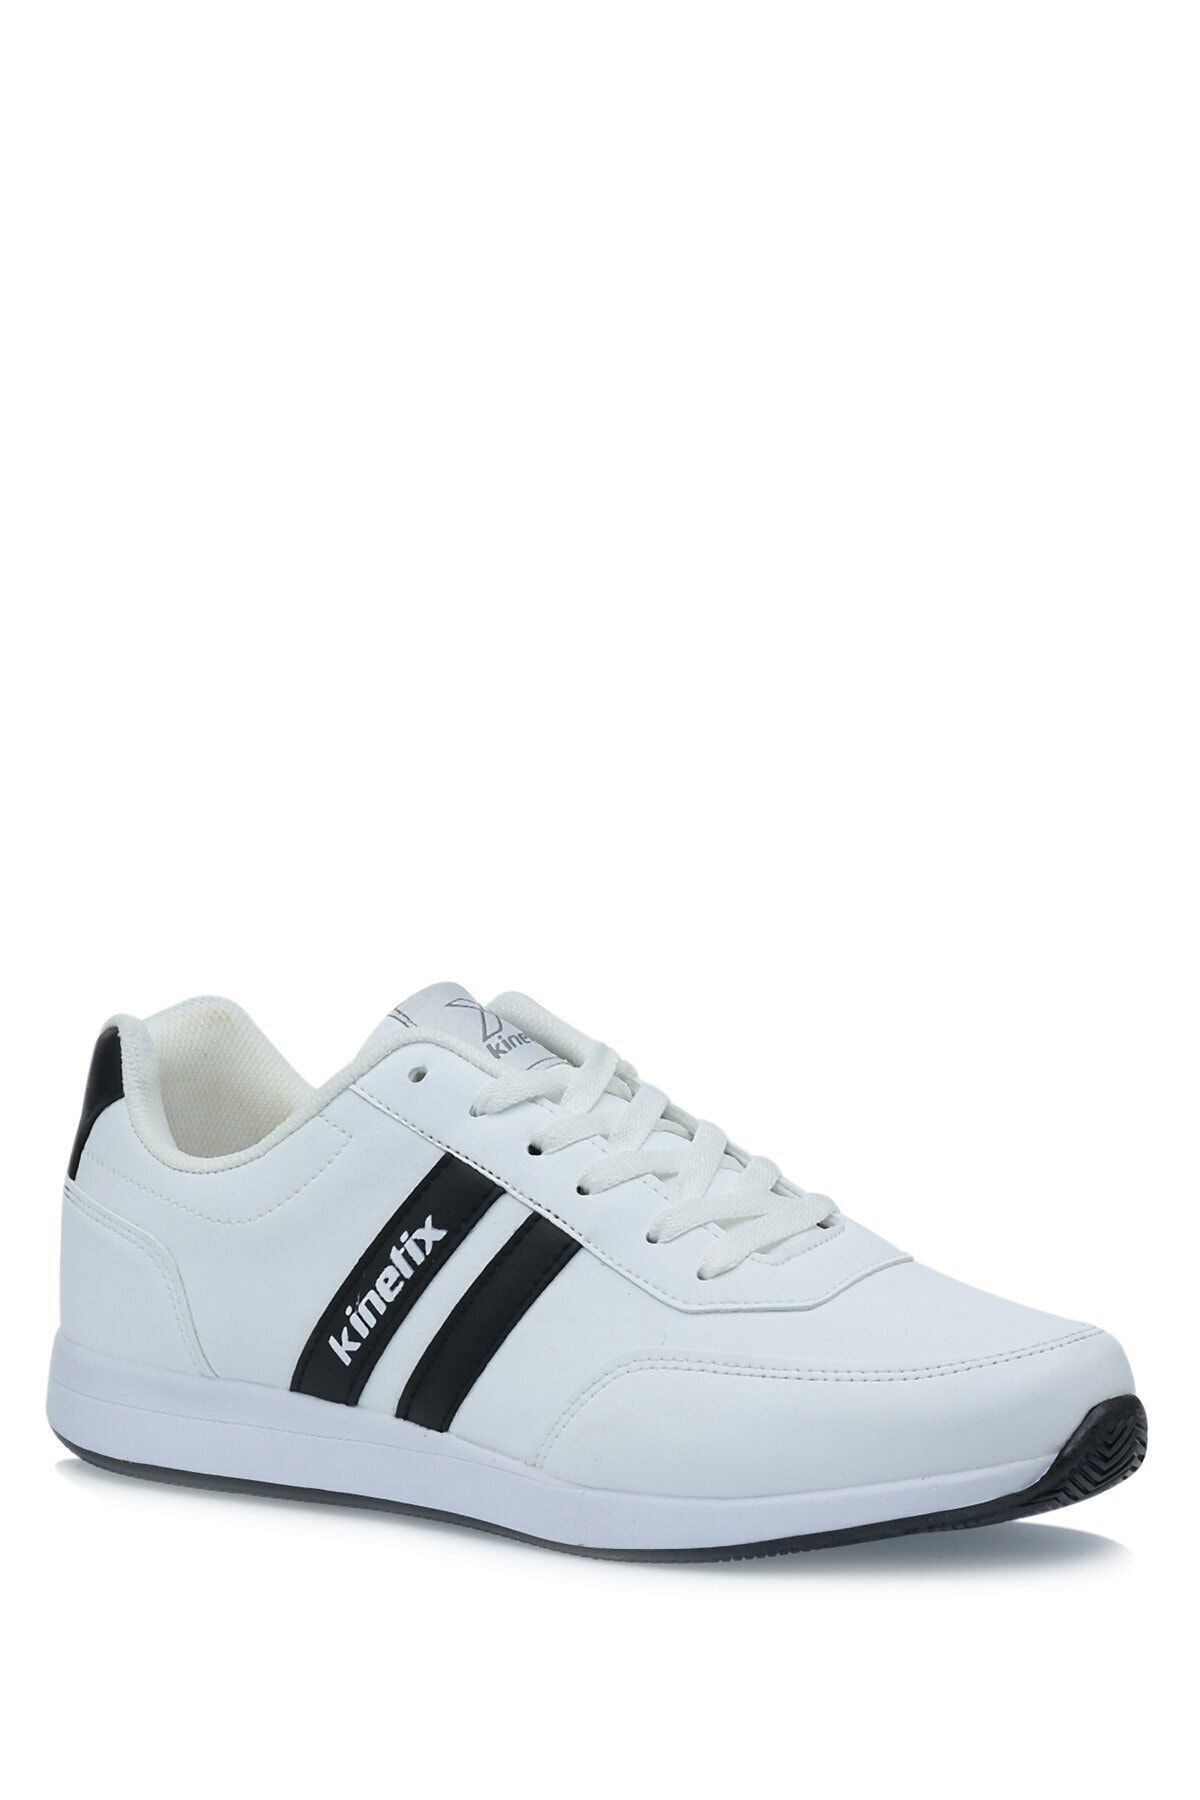 Kinetix Reeds Pu 1pr Sneaker Erkek Spor Ayakkabı - Beyaz - 40